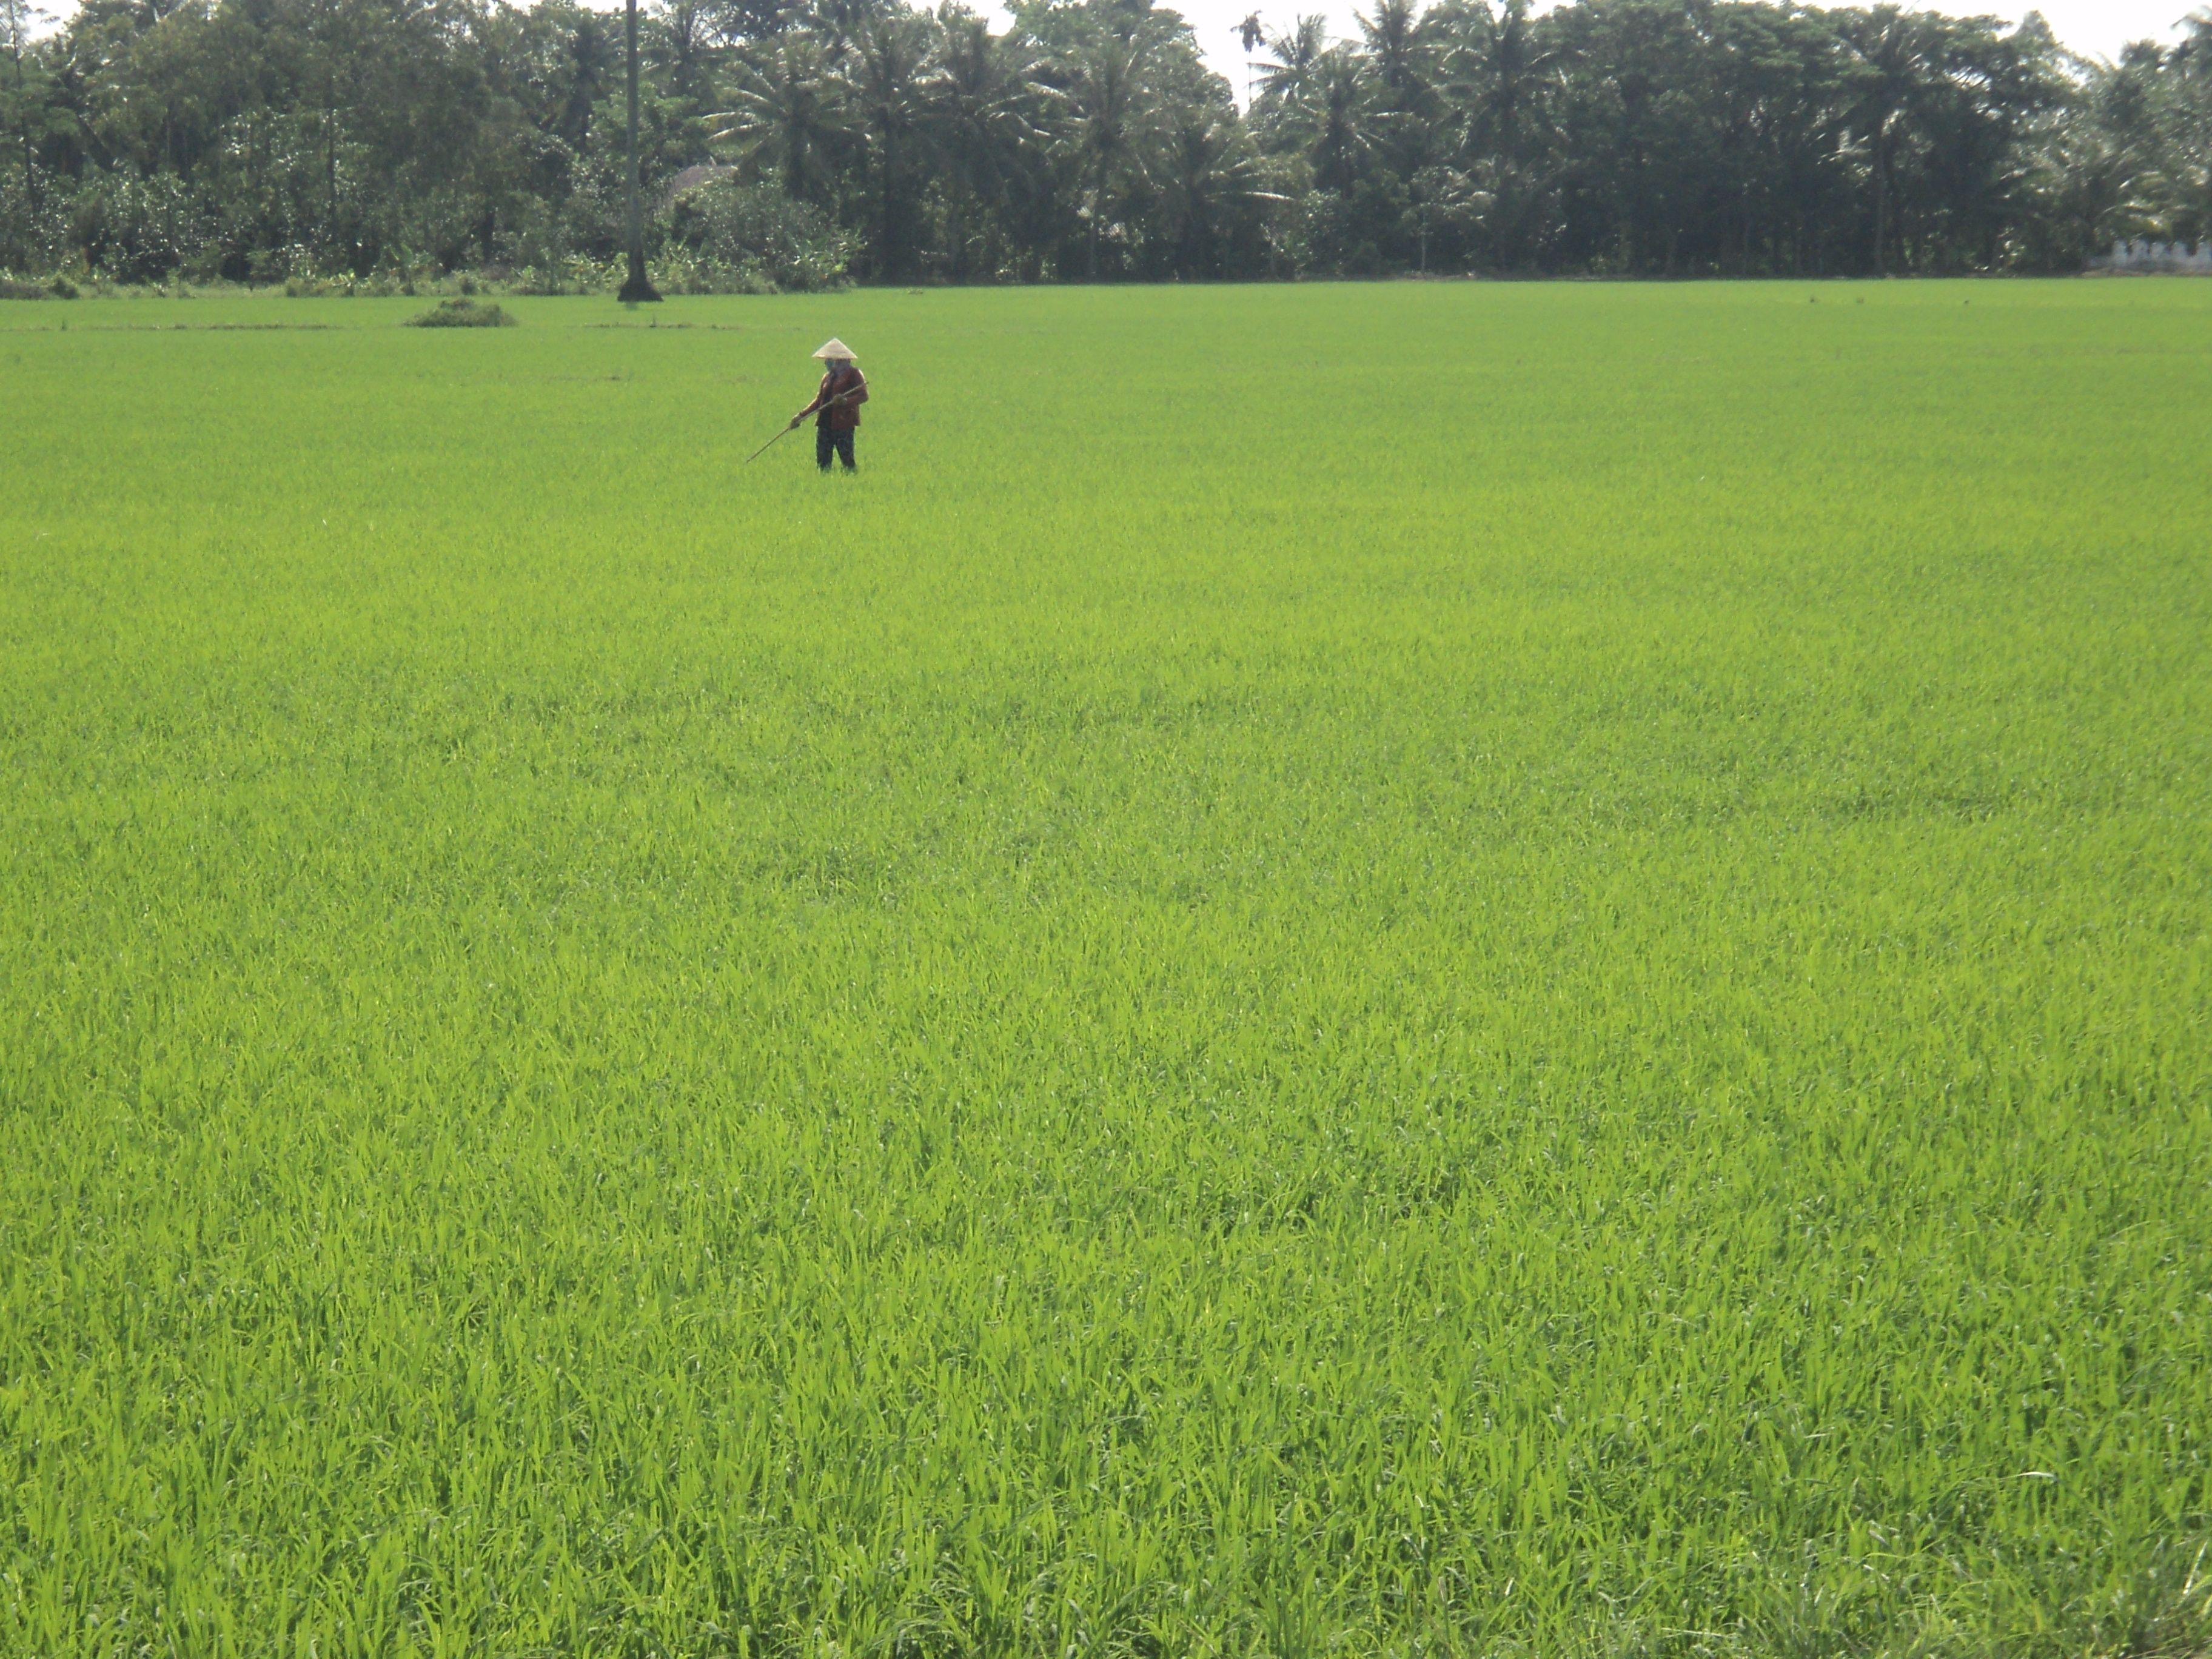 rice feilds mekong delta